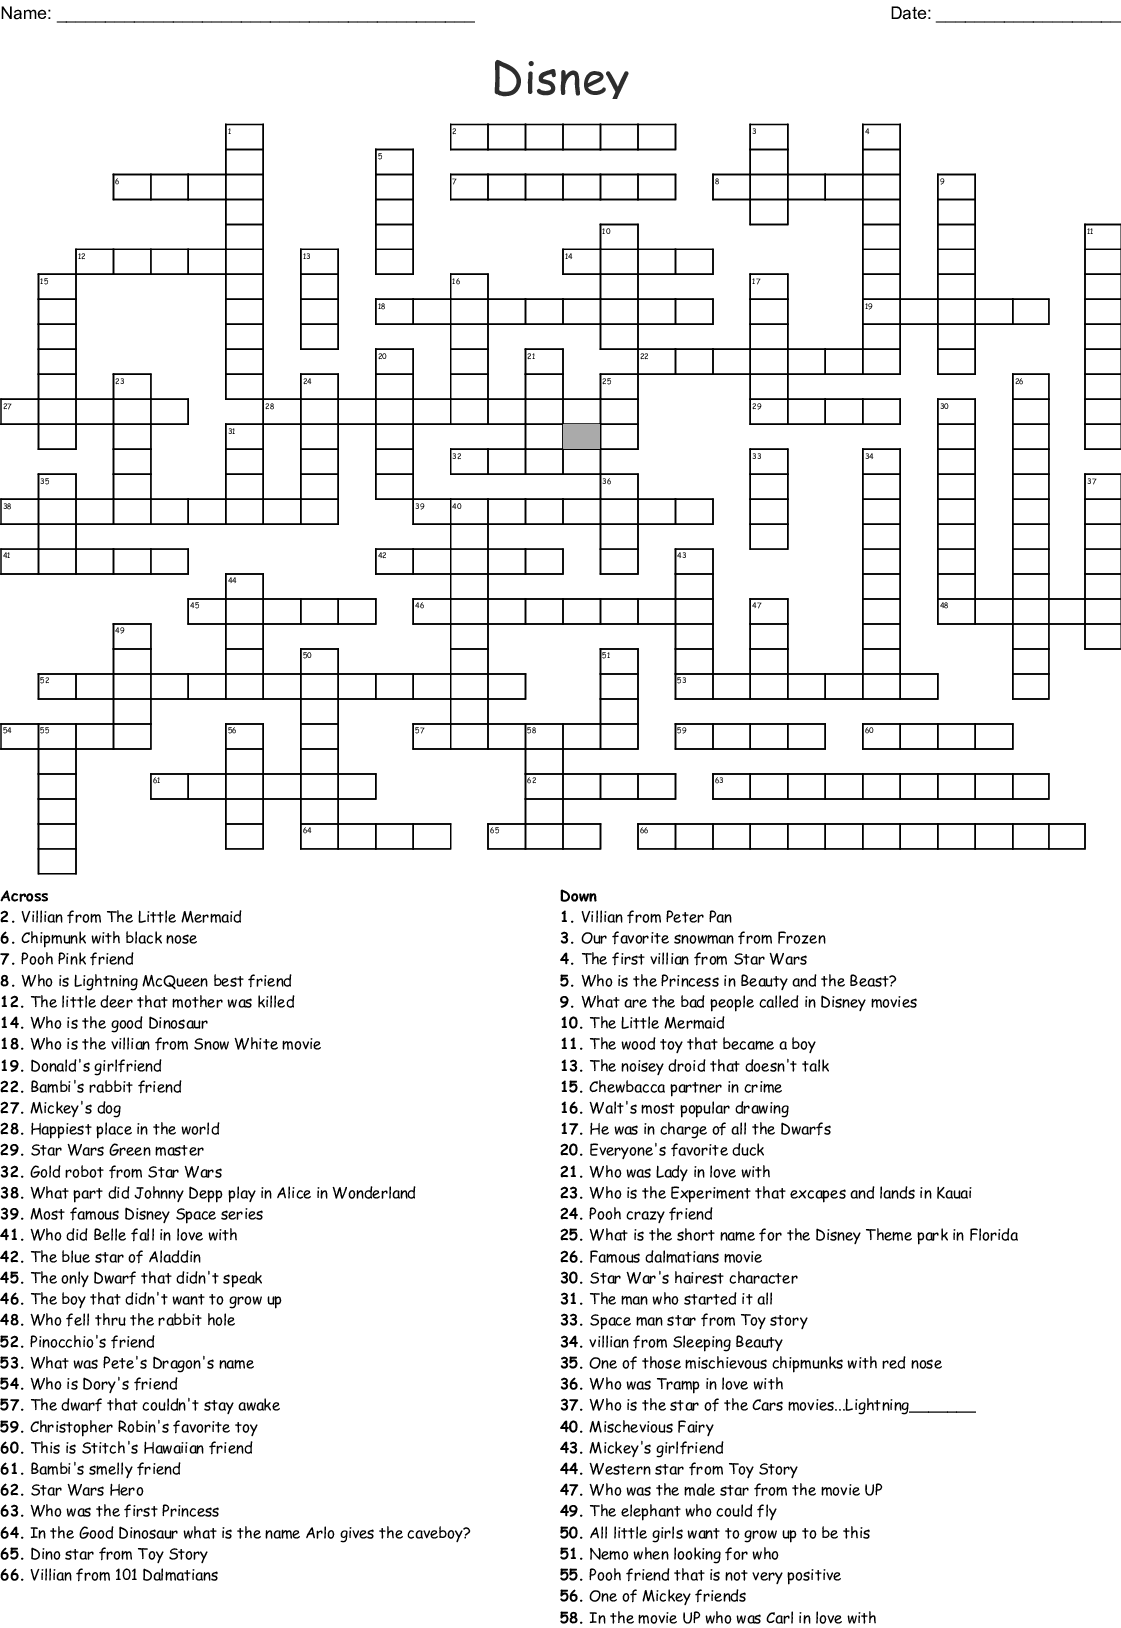 Disney Crossword Puzzles Printable